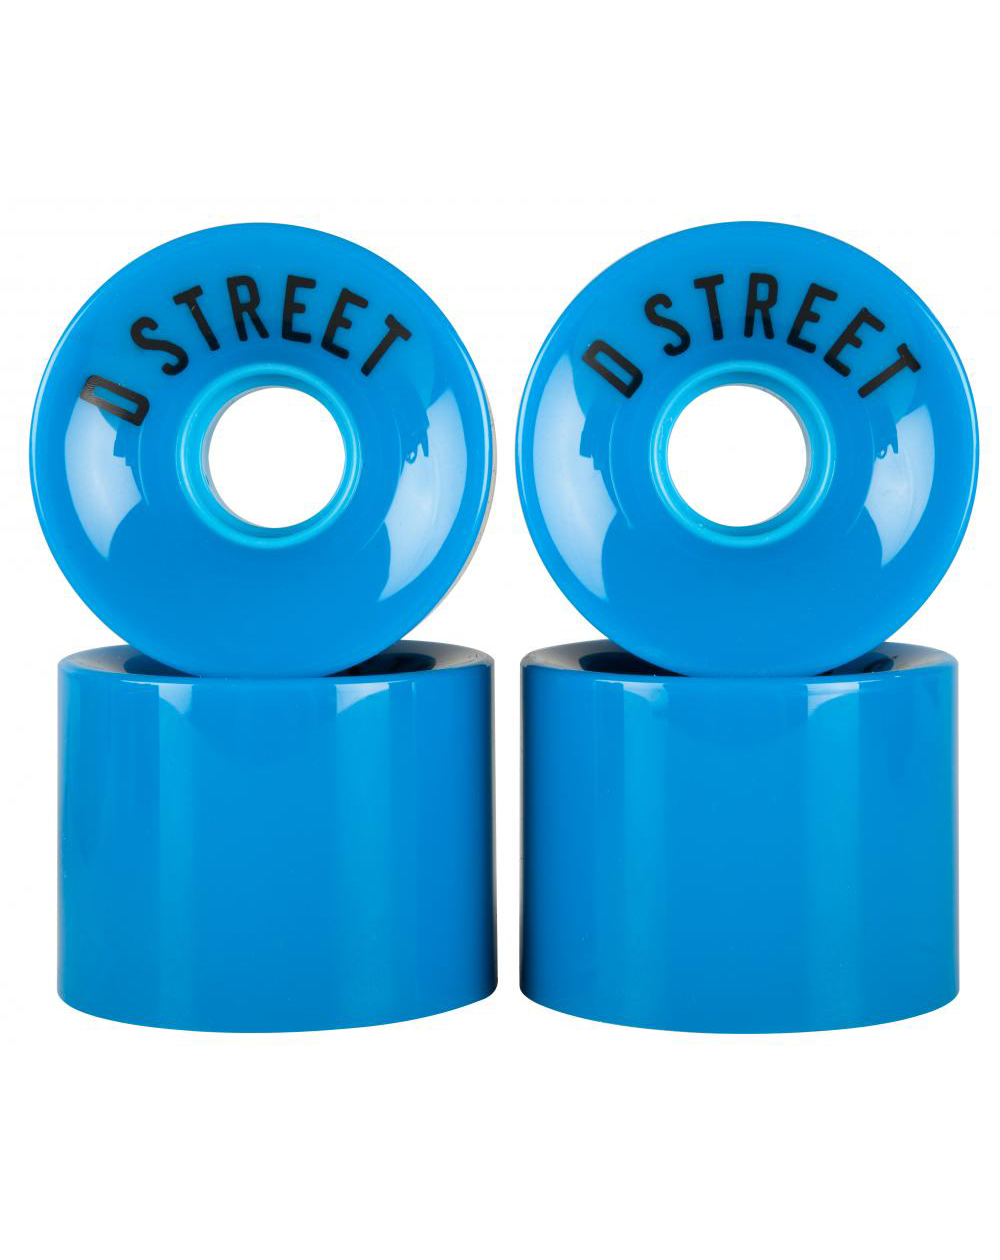 D-Street 59 Cents Longboard Wheels Blue pack of 4